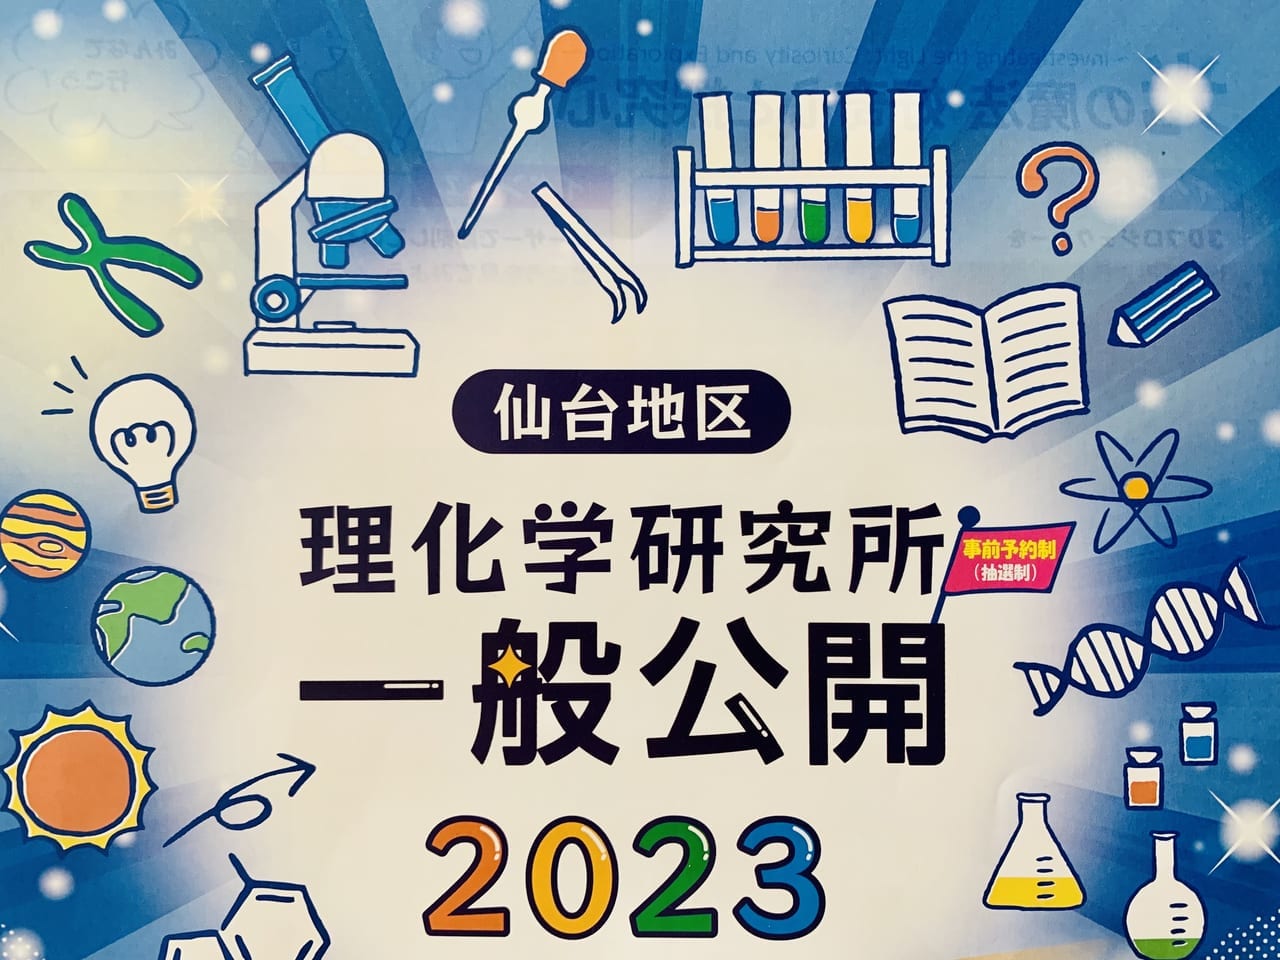 仙台地区 理化学研究所 一般公開2023